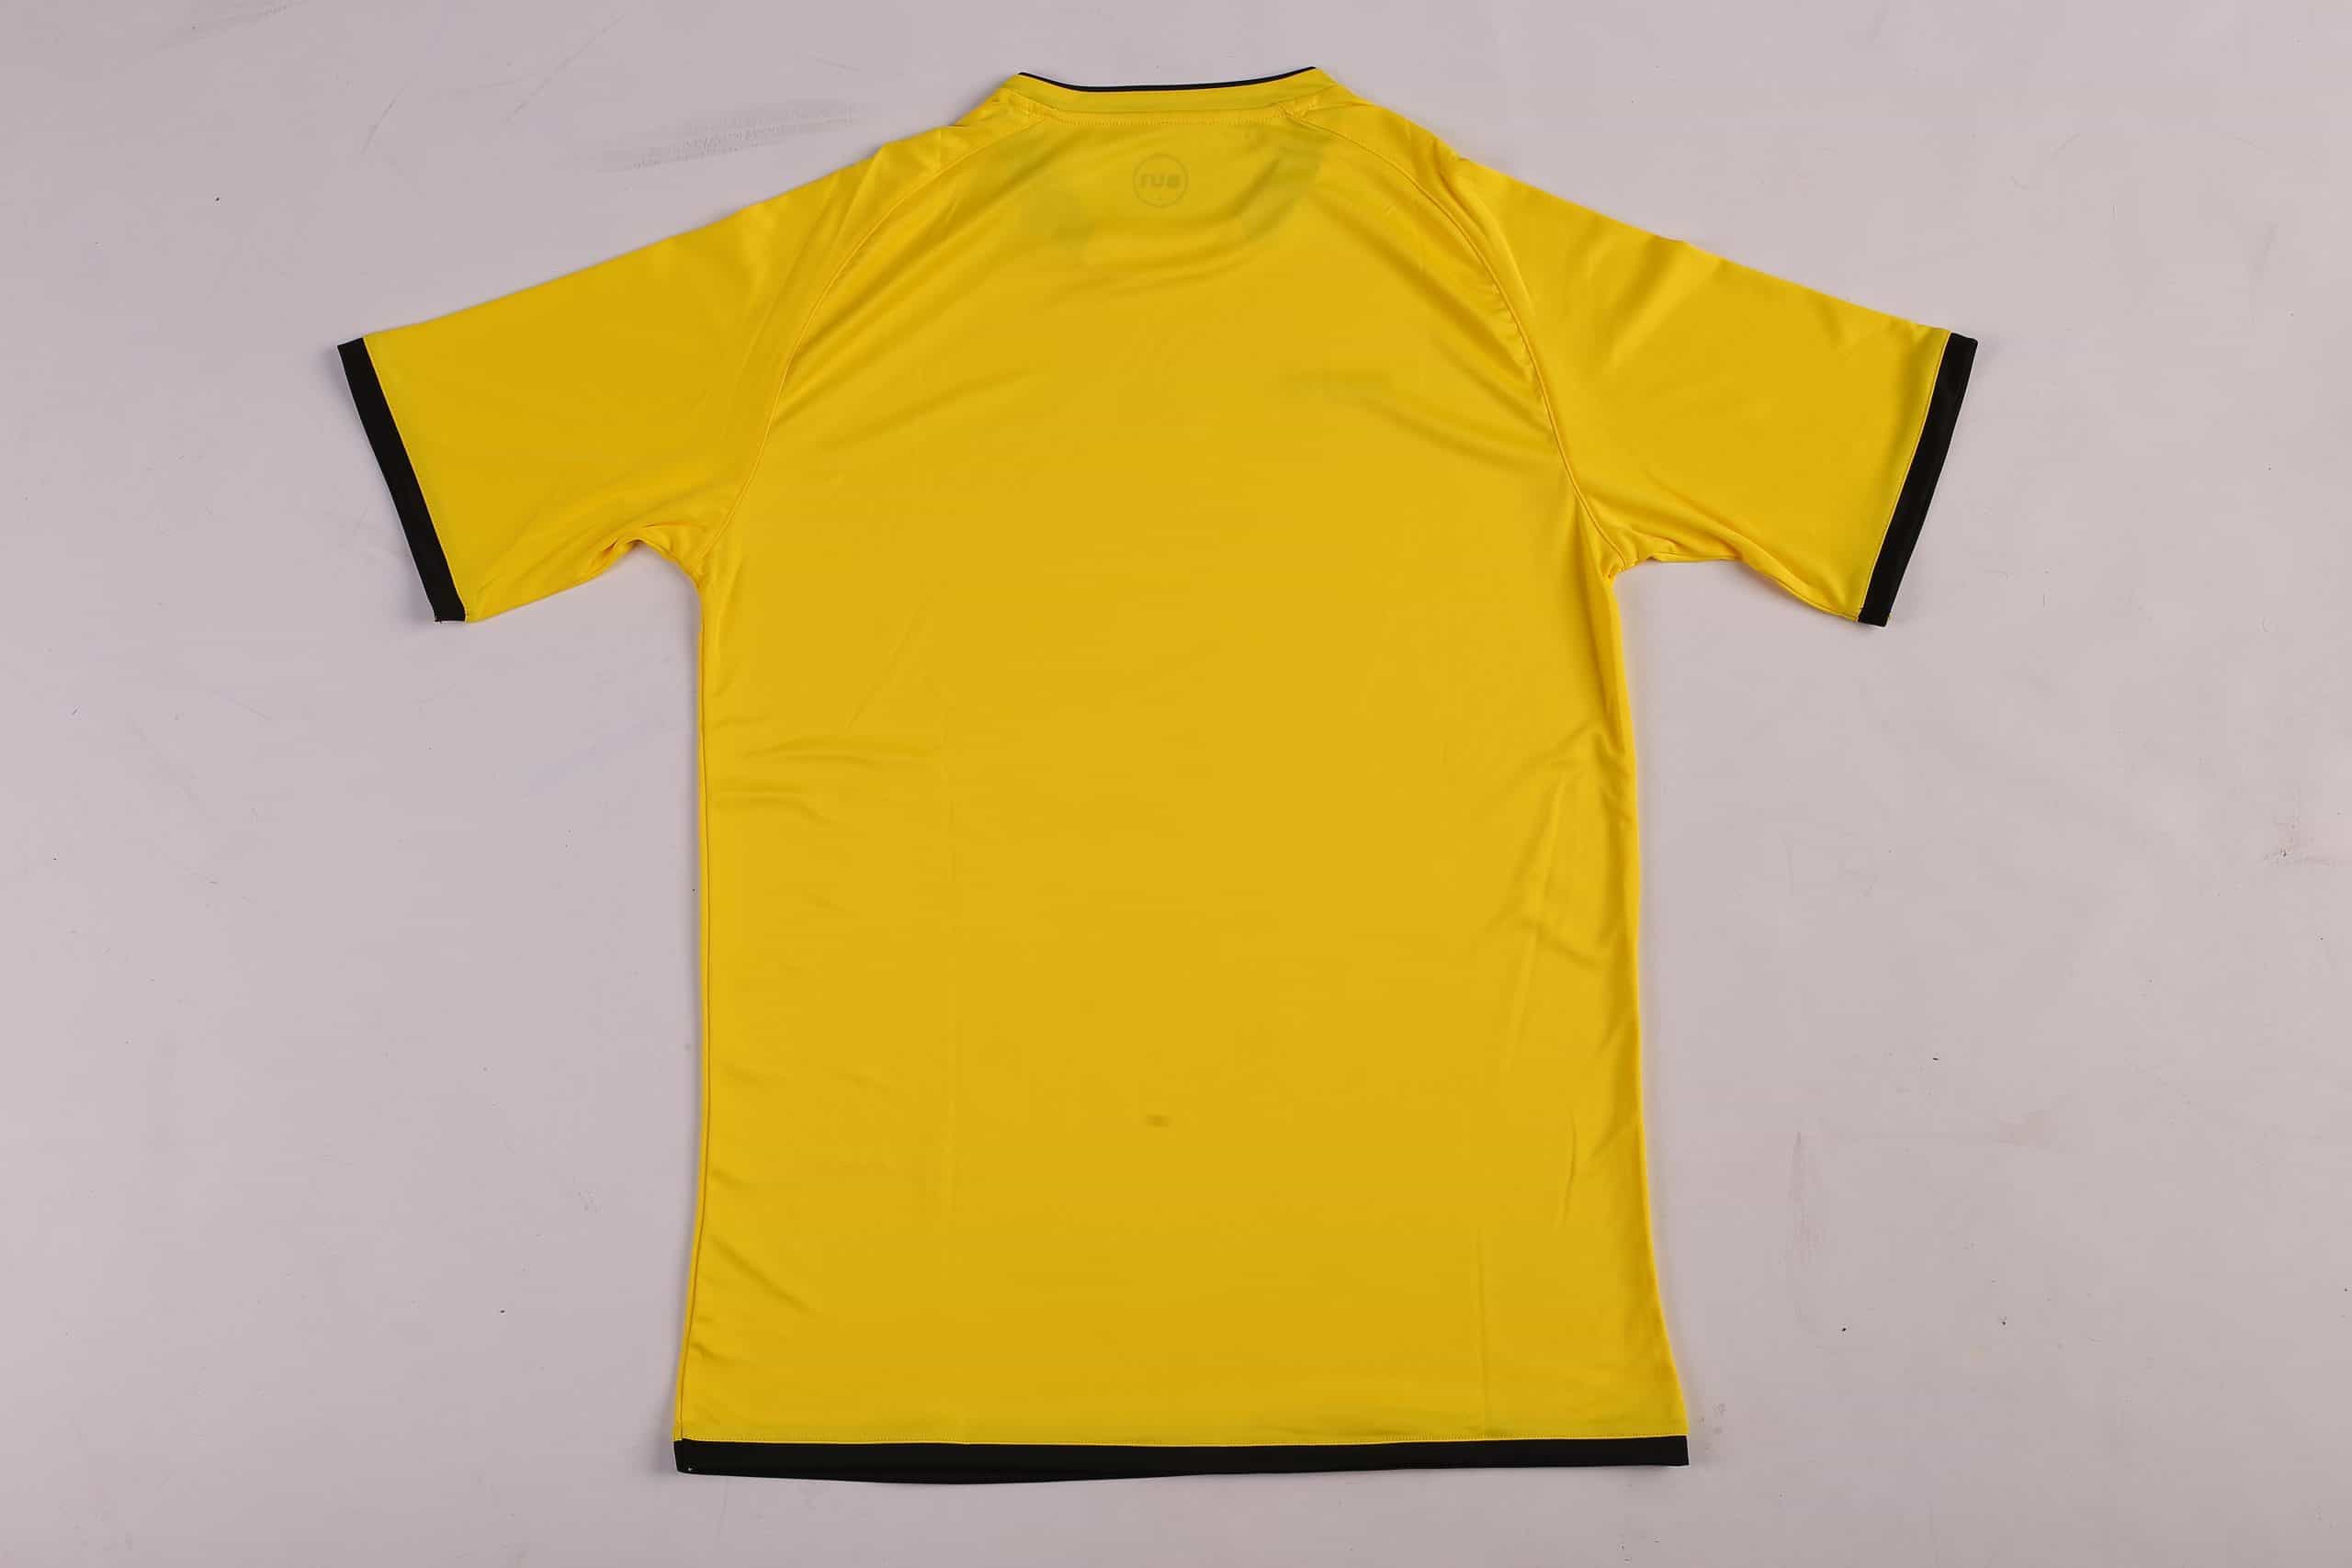 BU1 jersey 20 yellow